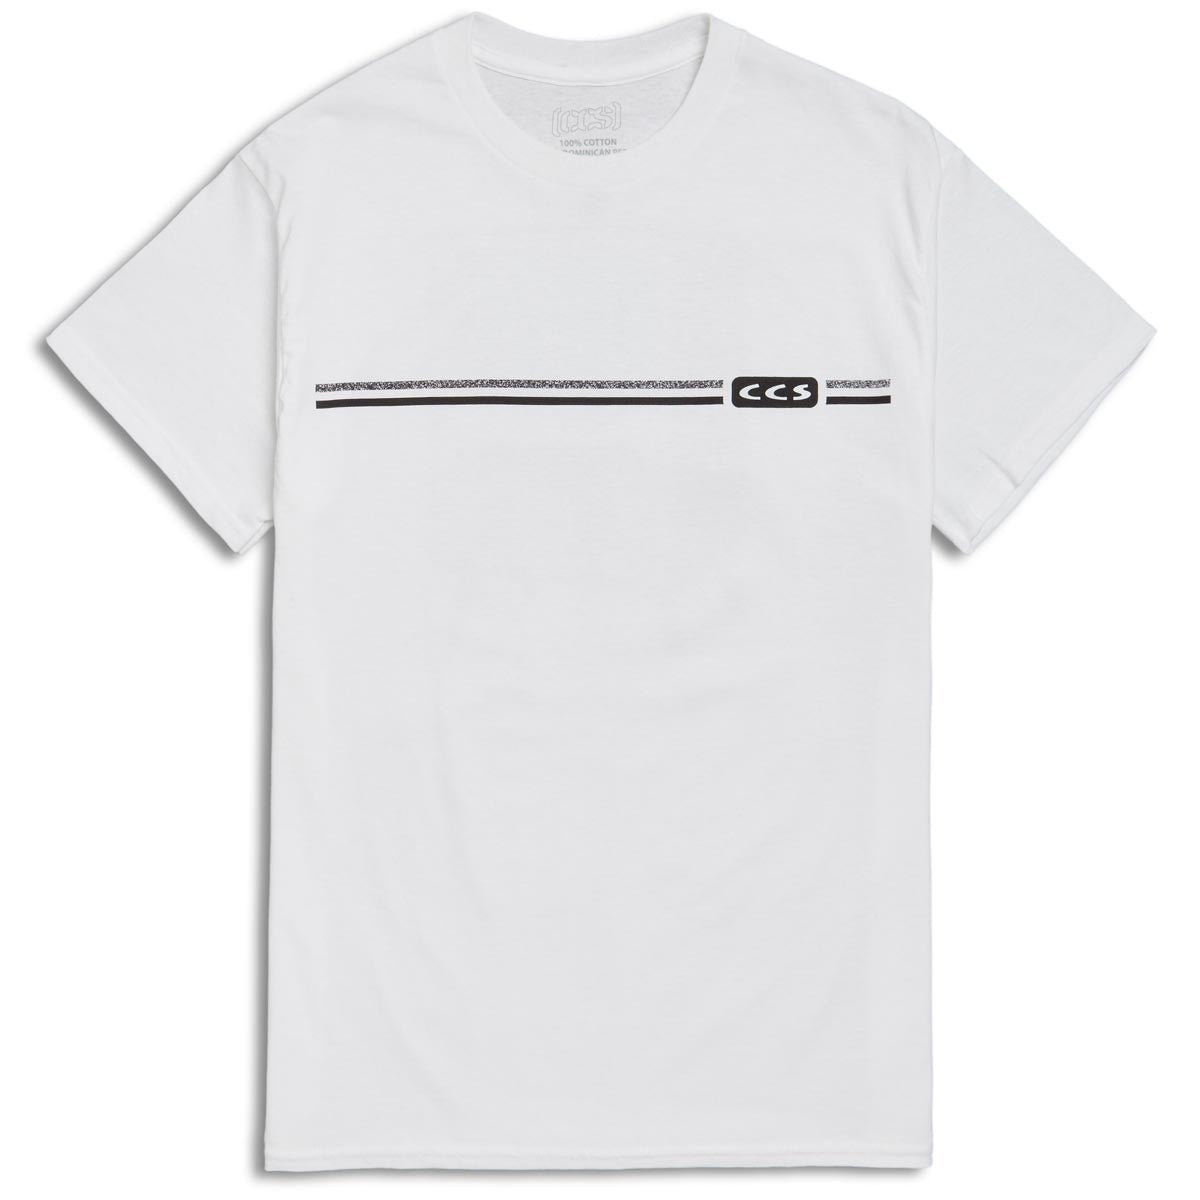 CCS Noise T-Shirt - White image 2